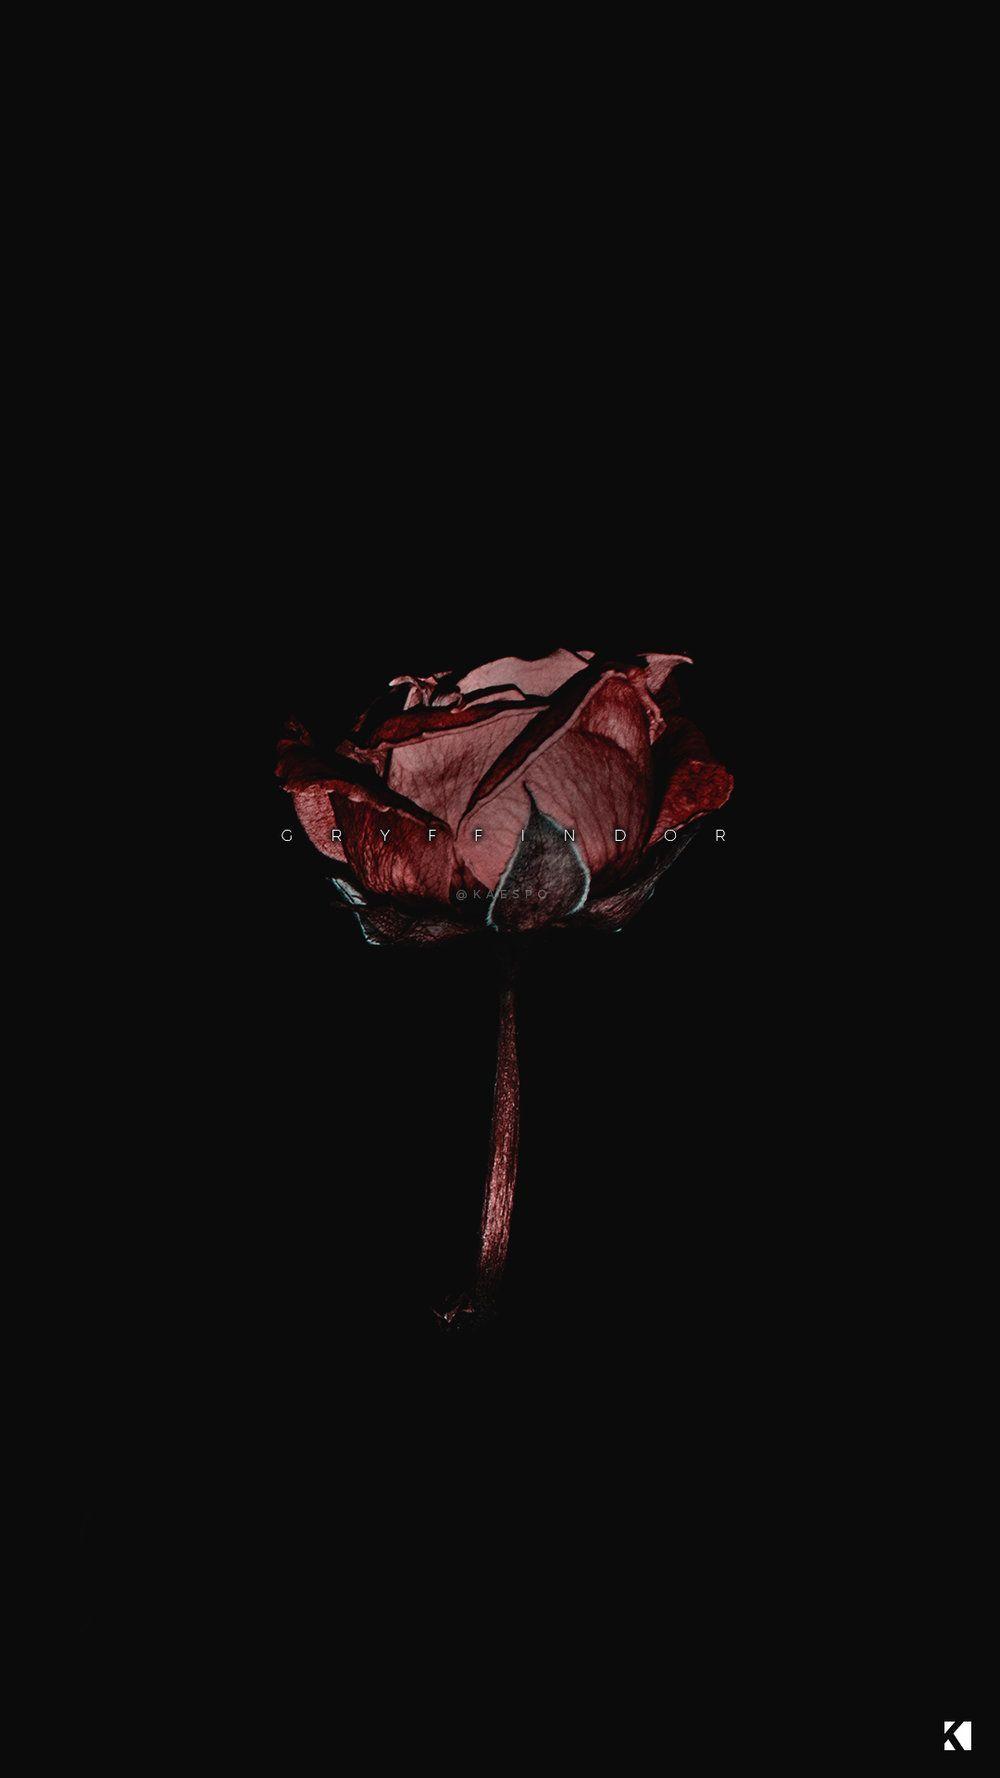 Ngắm nhìn hình ảnh của những bông hồng đen quyến rũ và bí ẩn này sẽ khiến bạn thích thú với sự khác biệt. Nếu bạn là một người yêu hoa, hãy xem ngay bức hình này để có những cảm nhận đặc biệt và độc đáo.